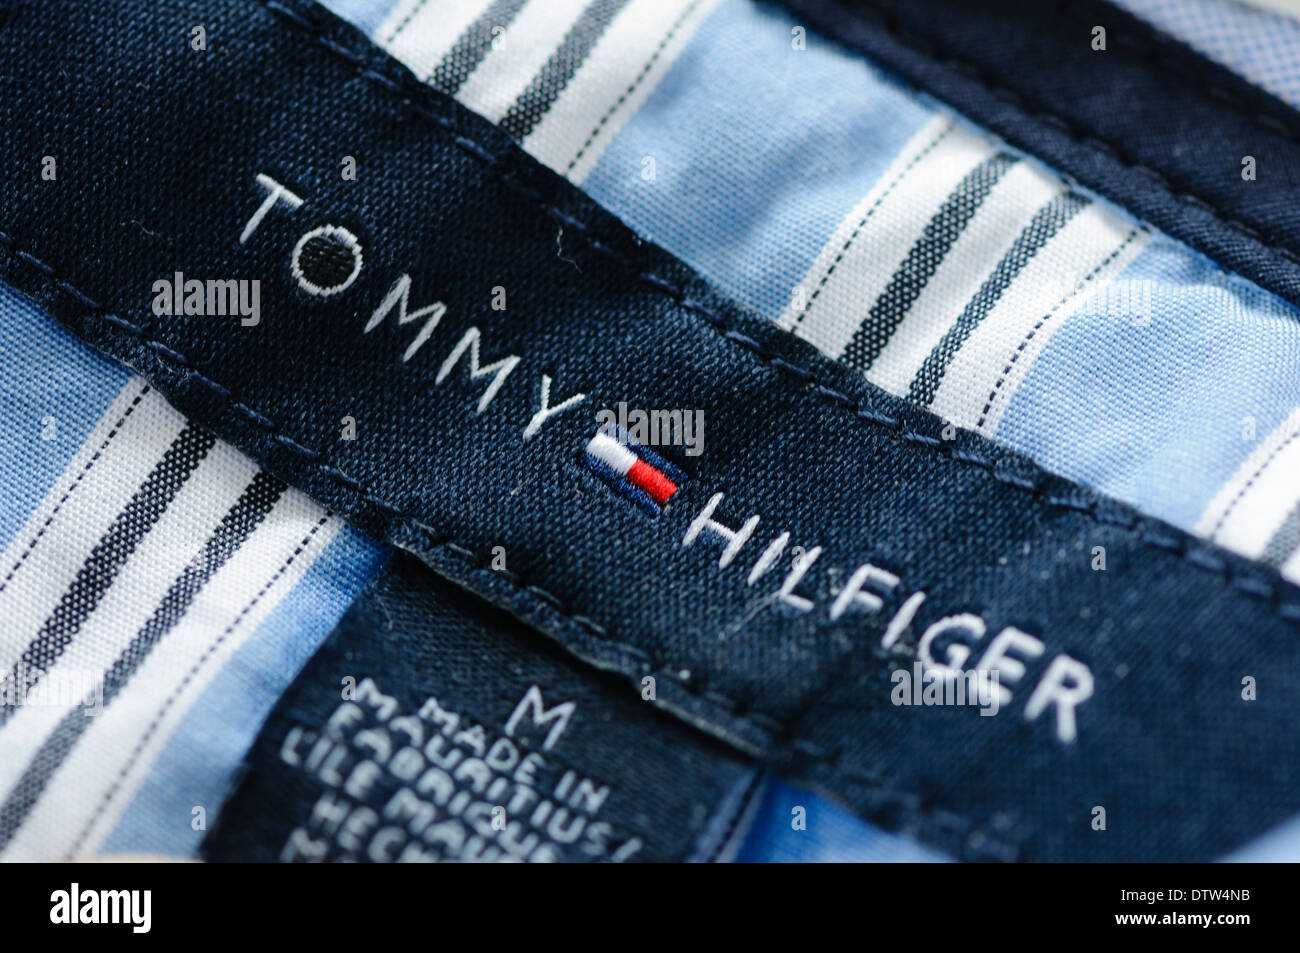 I udlandet deform stof Label on a Tommy Hilfiger men's shirt Stock Photo - Alamy